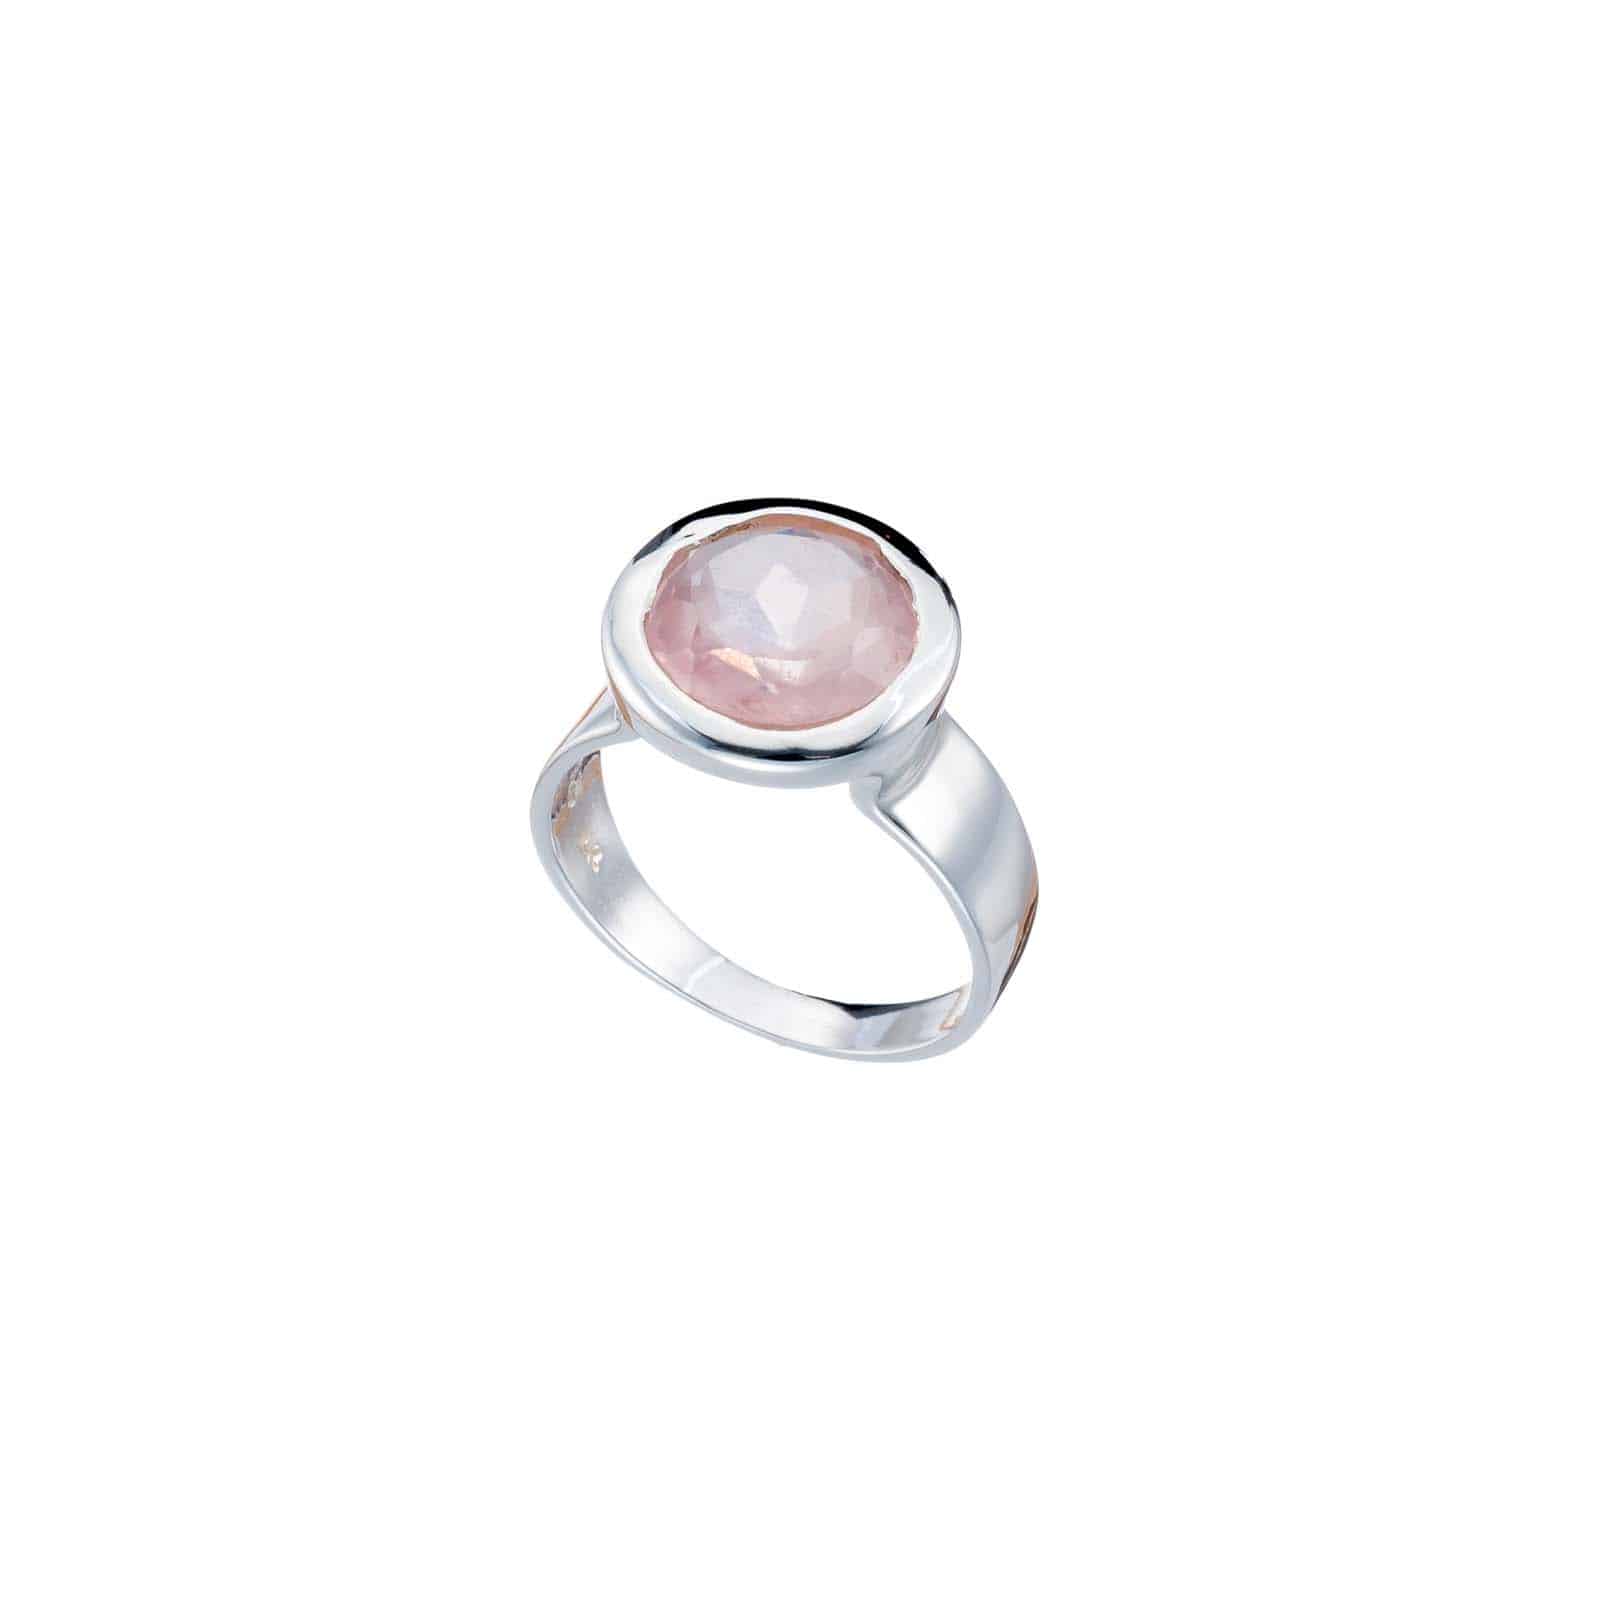 Χειροποίητο δαχτυλίδι από ασήμι 925 και φυσική πέτρα ροζ χαλαζία στρογγυλού σχήματος. Αγοράστε online shop.